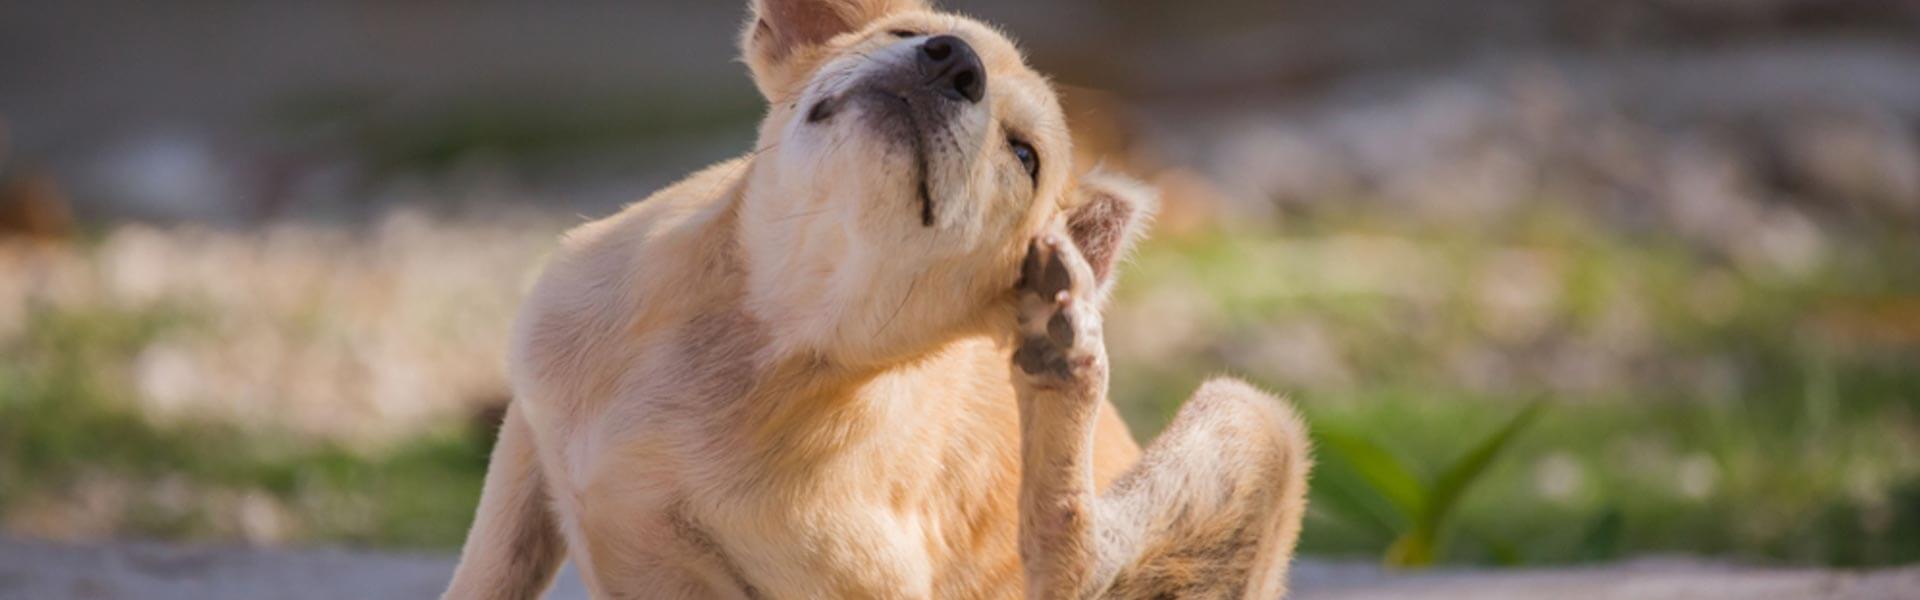 pak zwaan oase Veelvoorkomende oorzaken van jeuk bij honden | Animigo